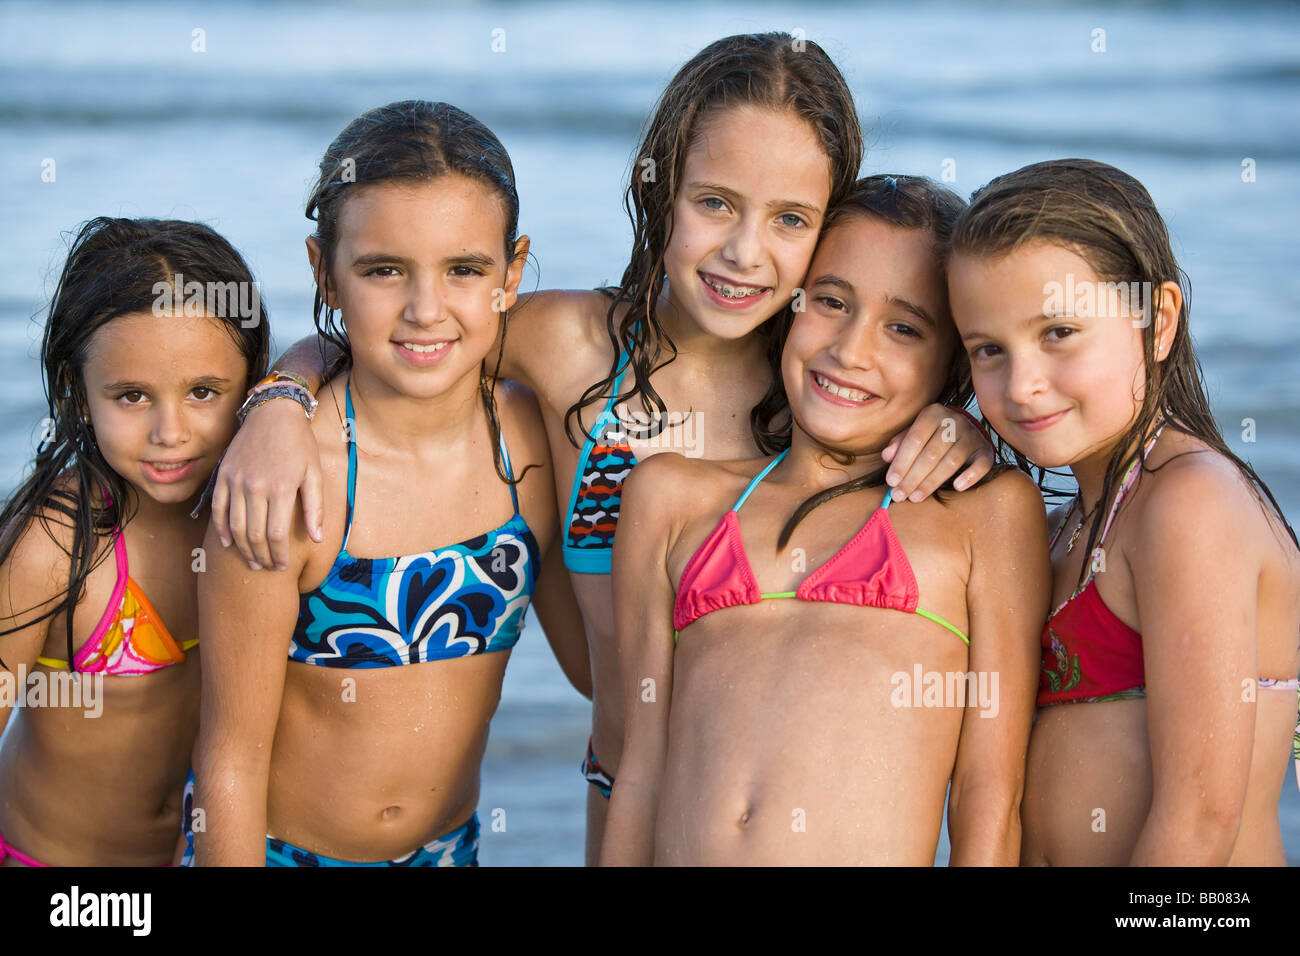 Hispanic Chicas En Bikini Posando En La Playa Fotografía De Stock Alamy